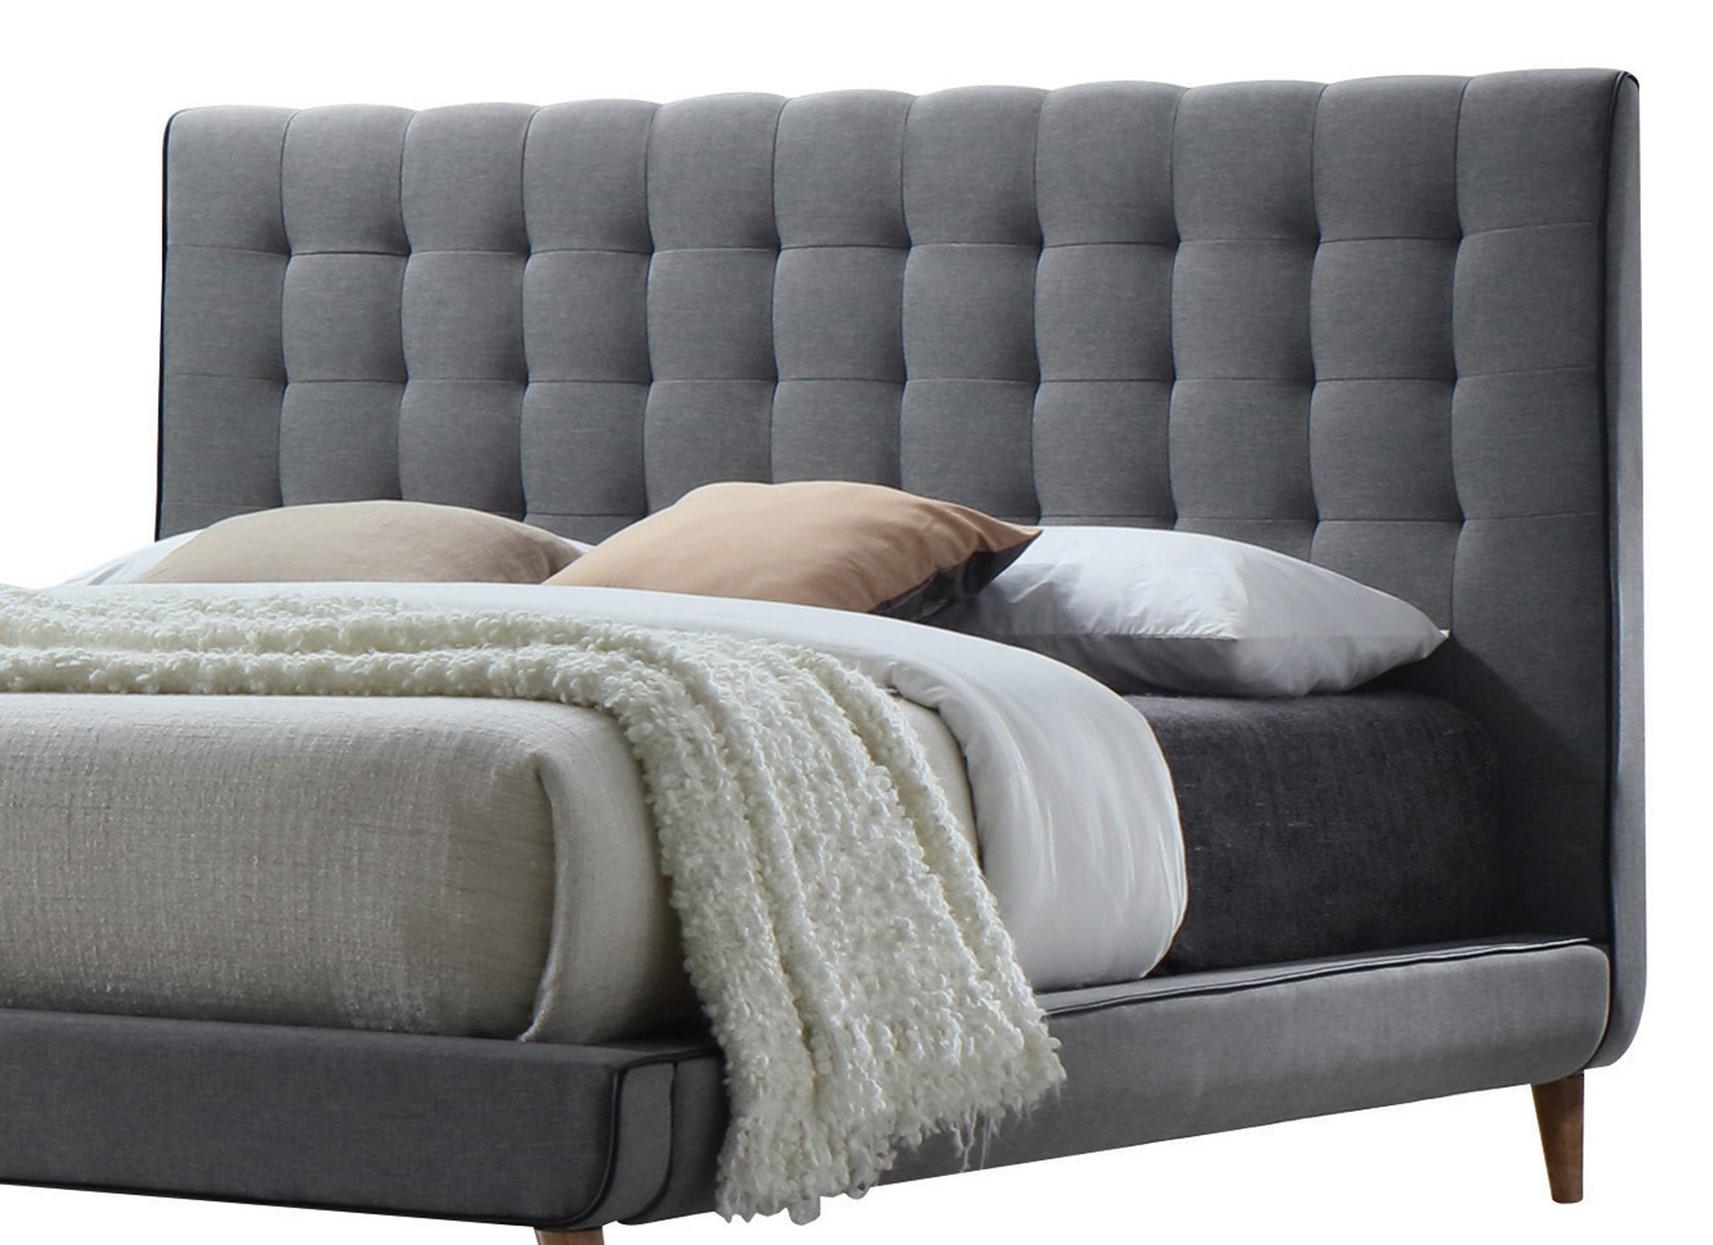 

        
Acme Furniture Valda-24517EK Panel Bedroom Set Light Grey Fabric 00840412103285
